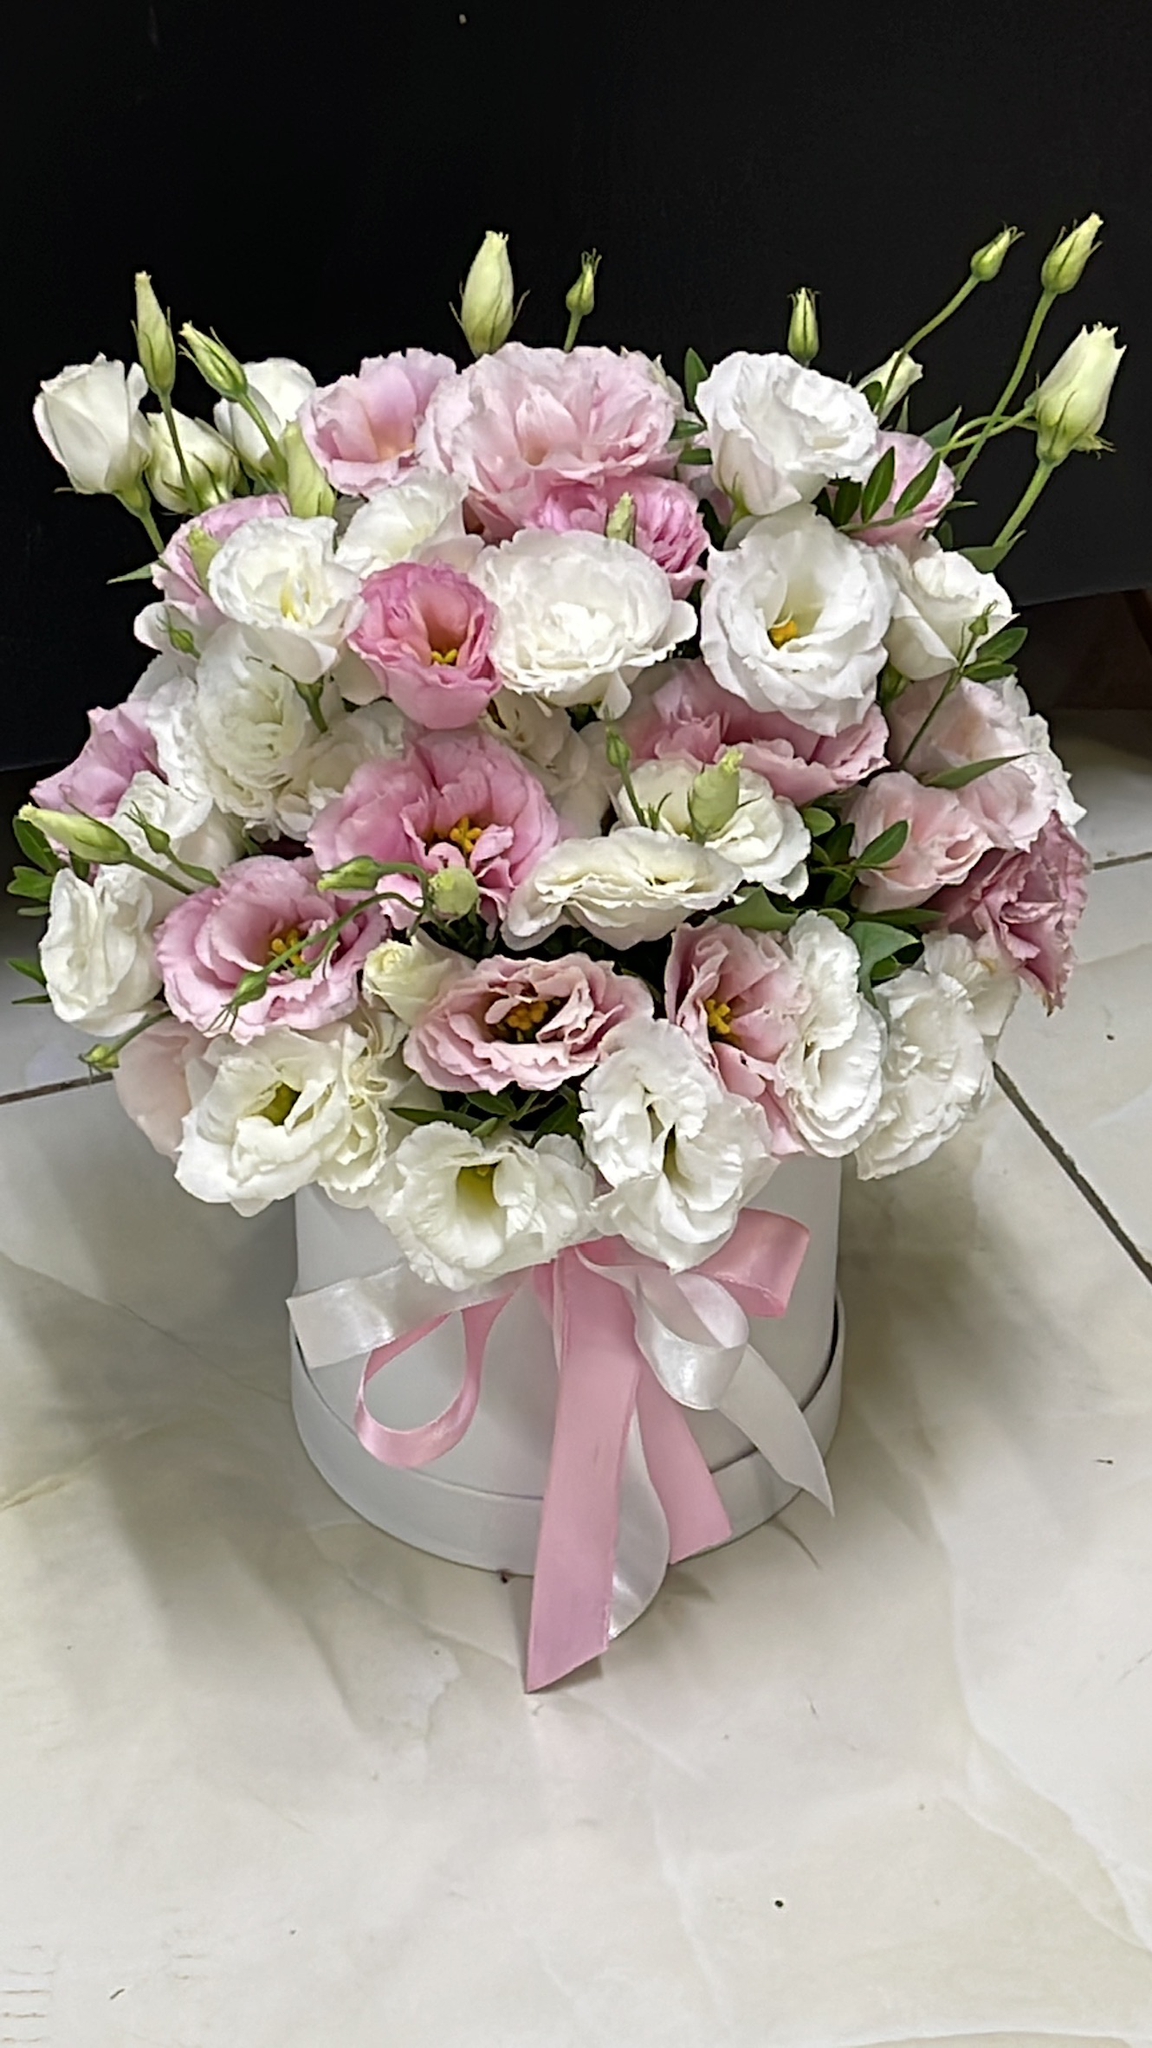  Antalya Florist Rosa und weiße Lisianthus in einer Box